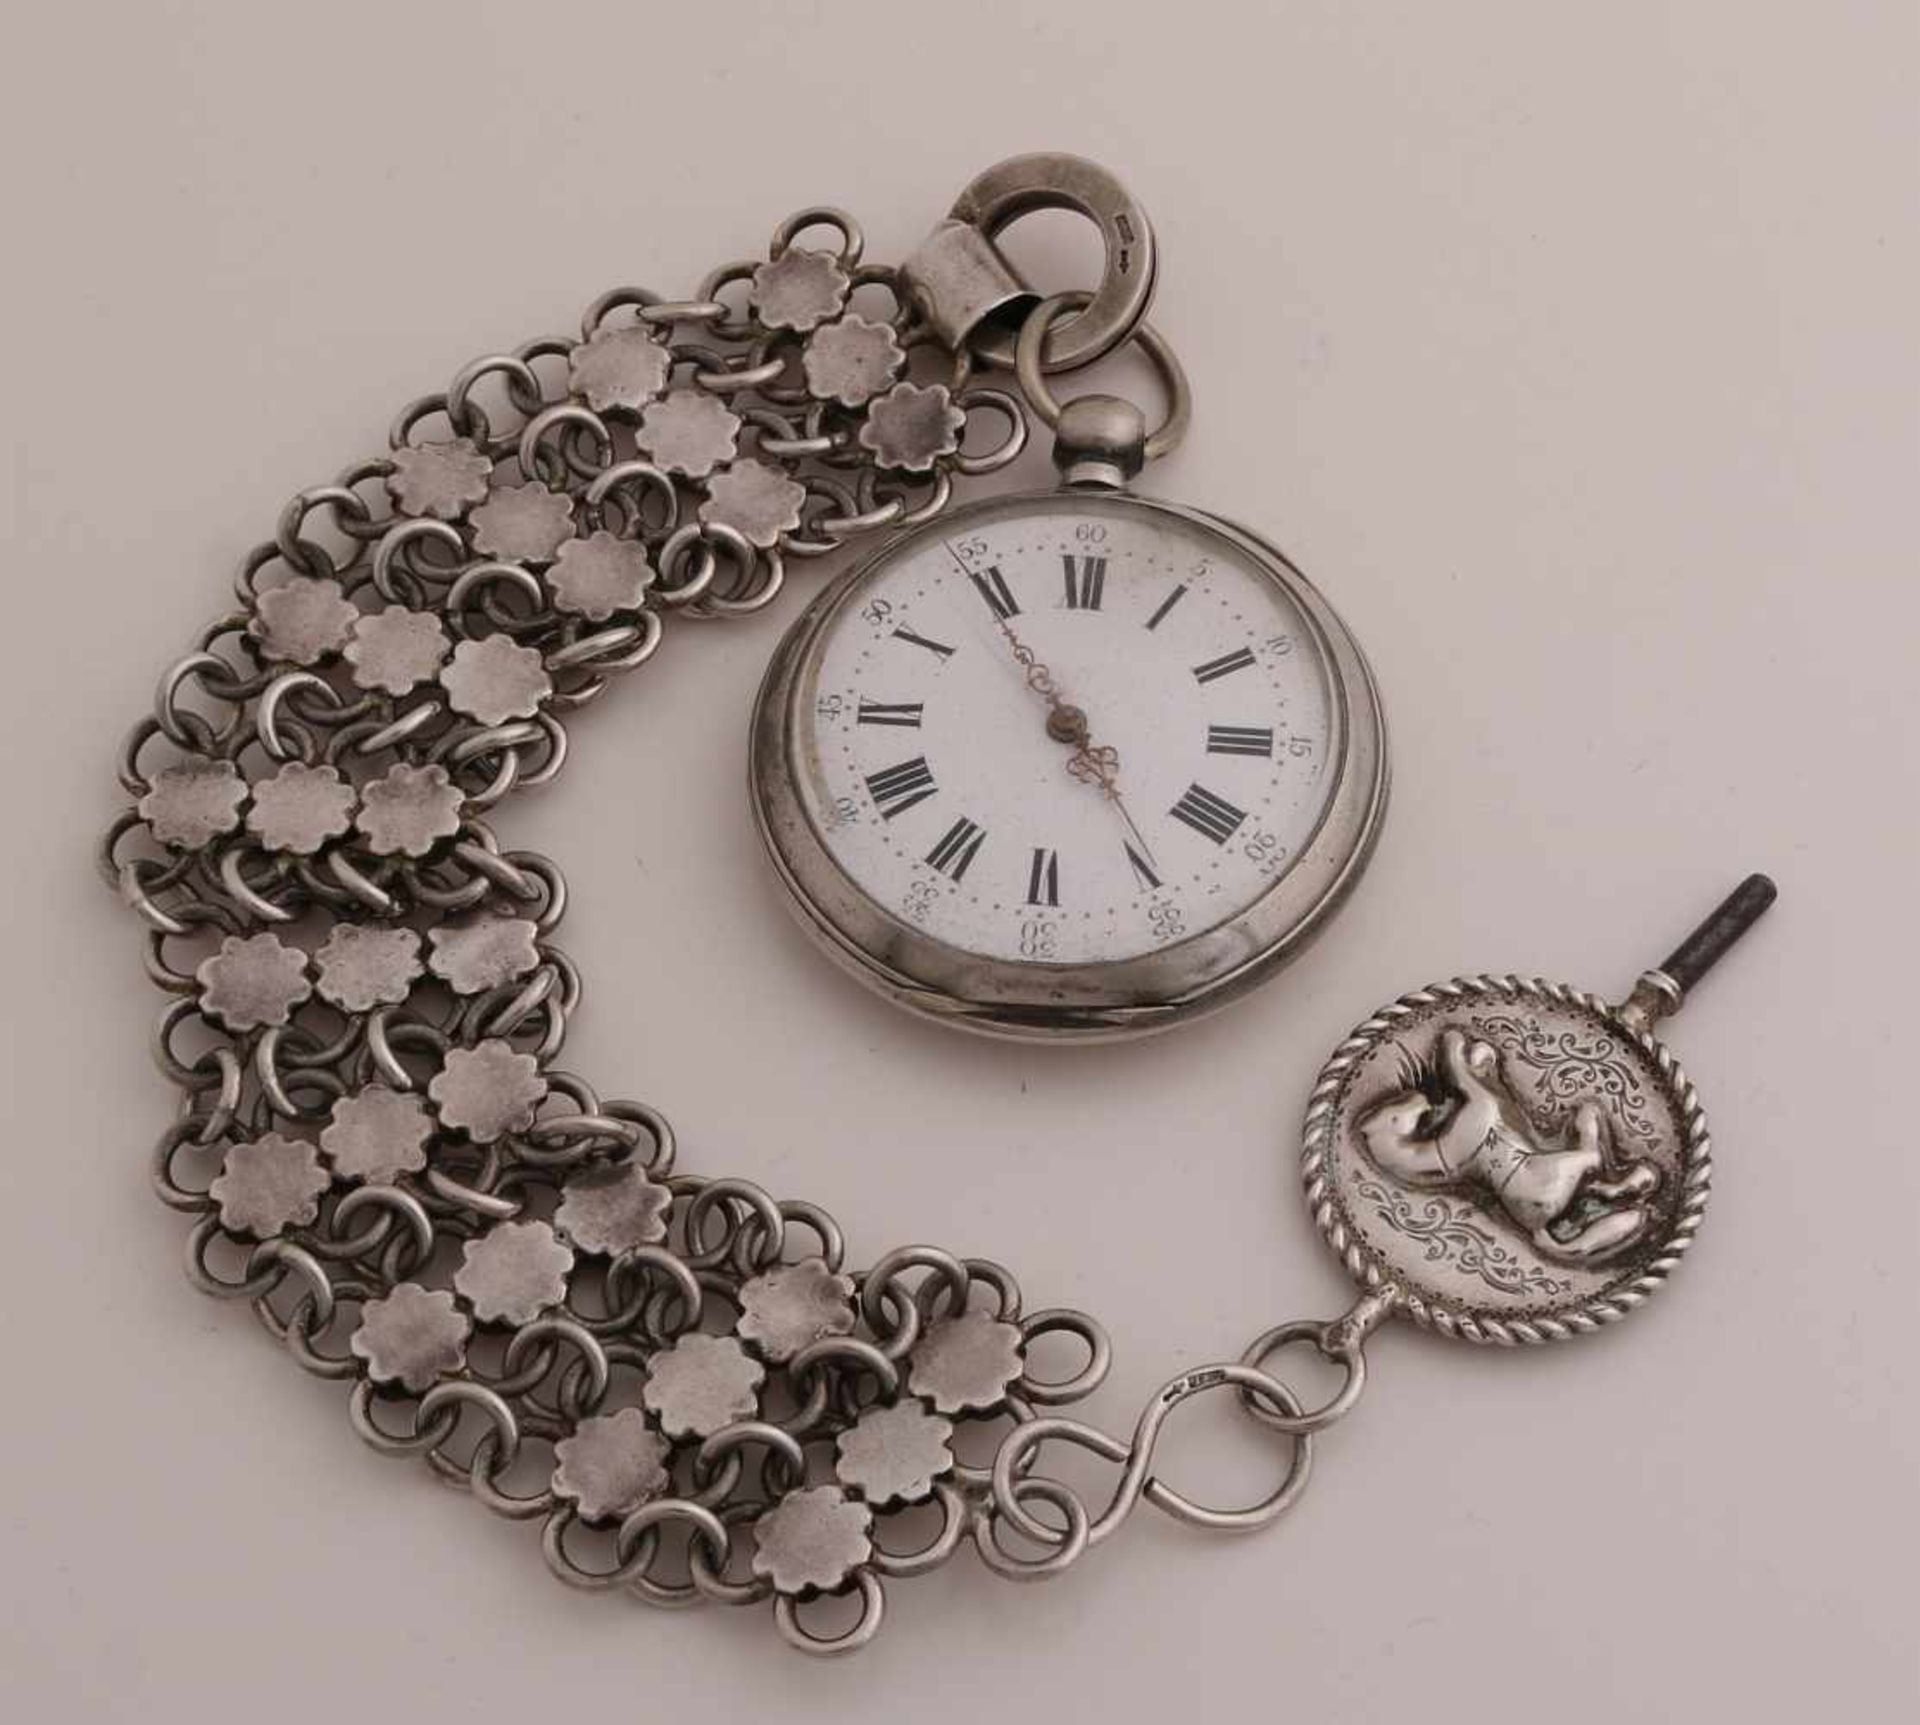 Silberne Taschenuhr, 800/000, mit Chatelaine und Schlüssel, 833/000. Uhr, ø 51 mm, mit